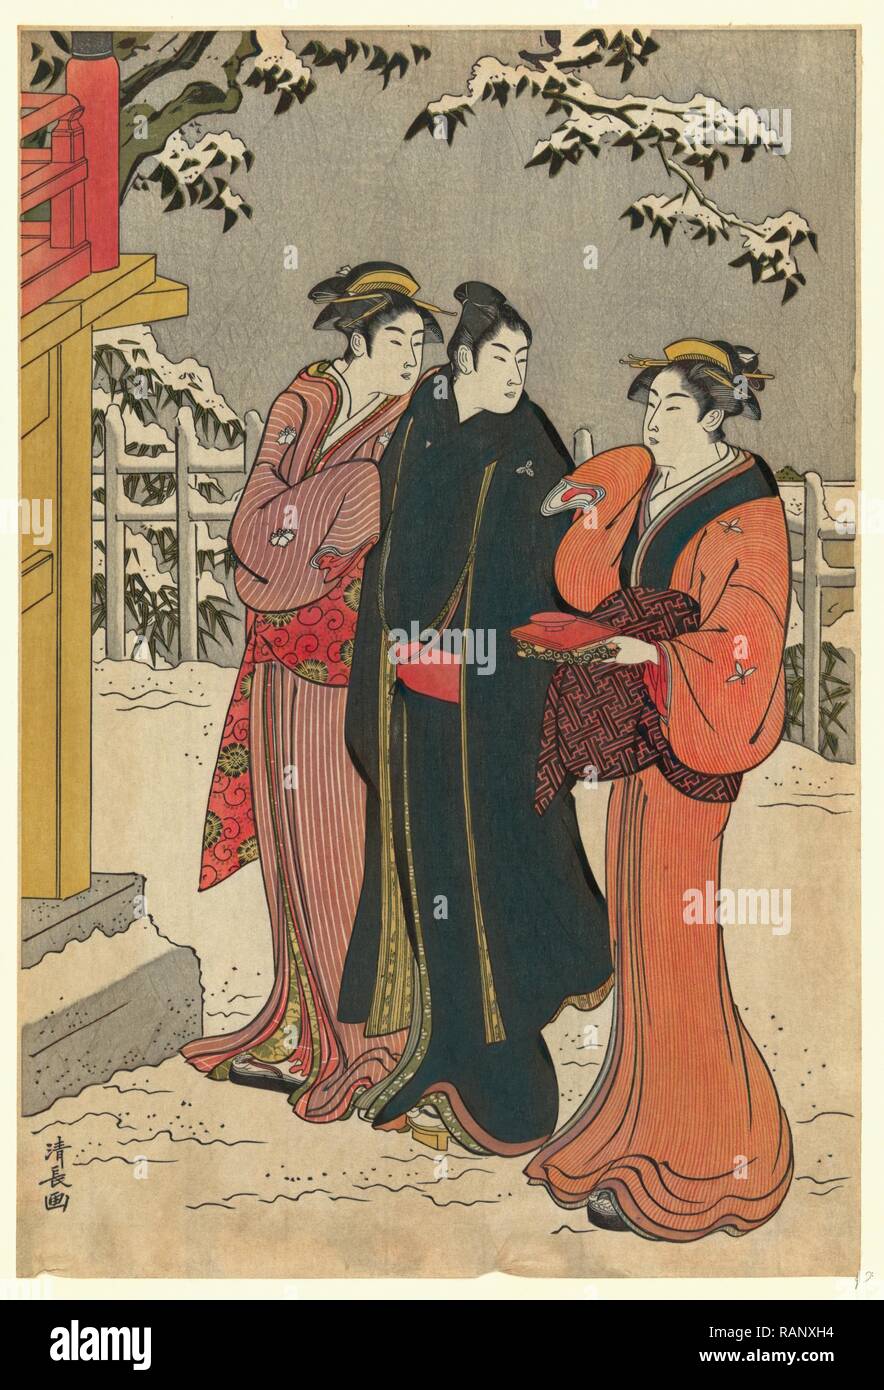 No Matsuchiyama Yukimi, ver la nieve en el monte Matchi. [1784], 1 Imprimir posteriormente imprimir: Xilografía, color, impresión muestra un reinventado Foto de stock